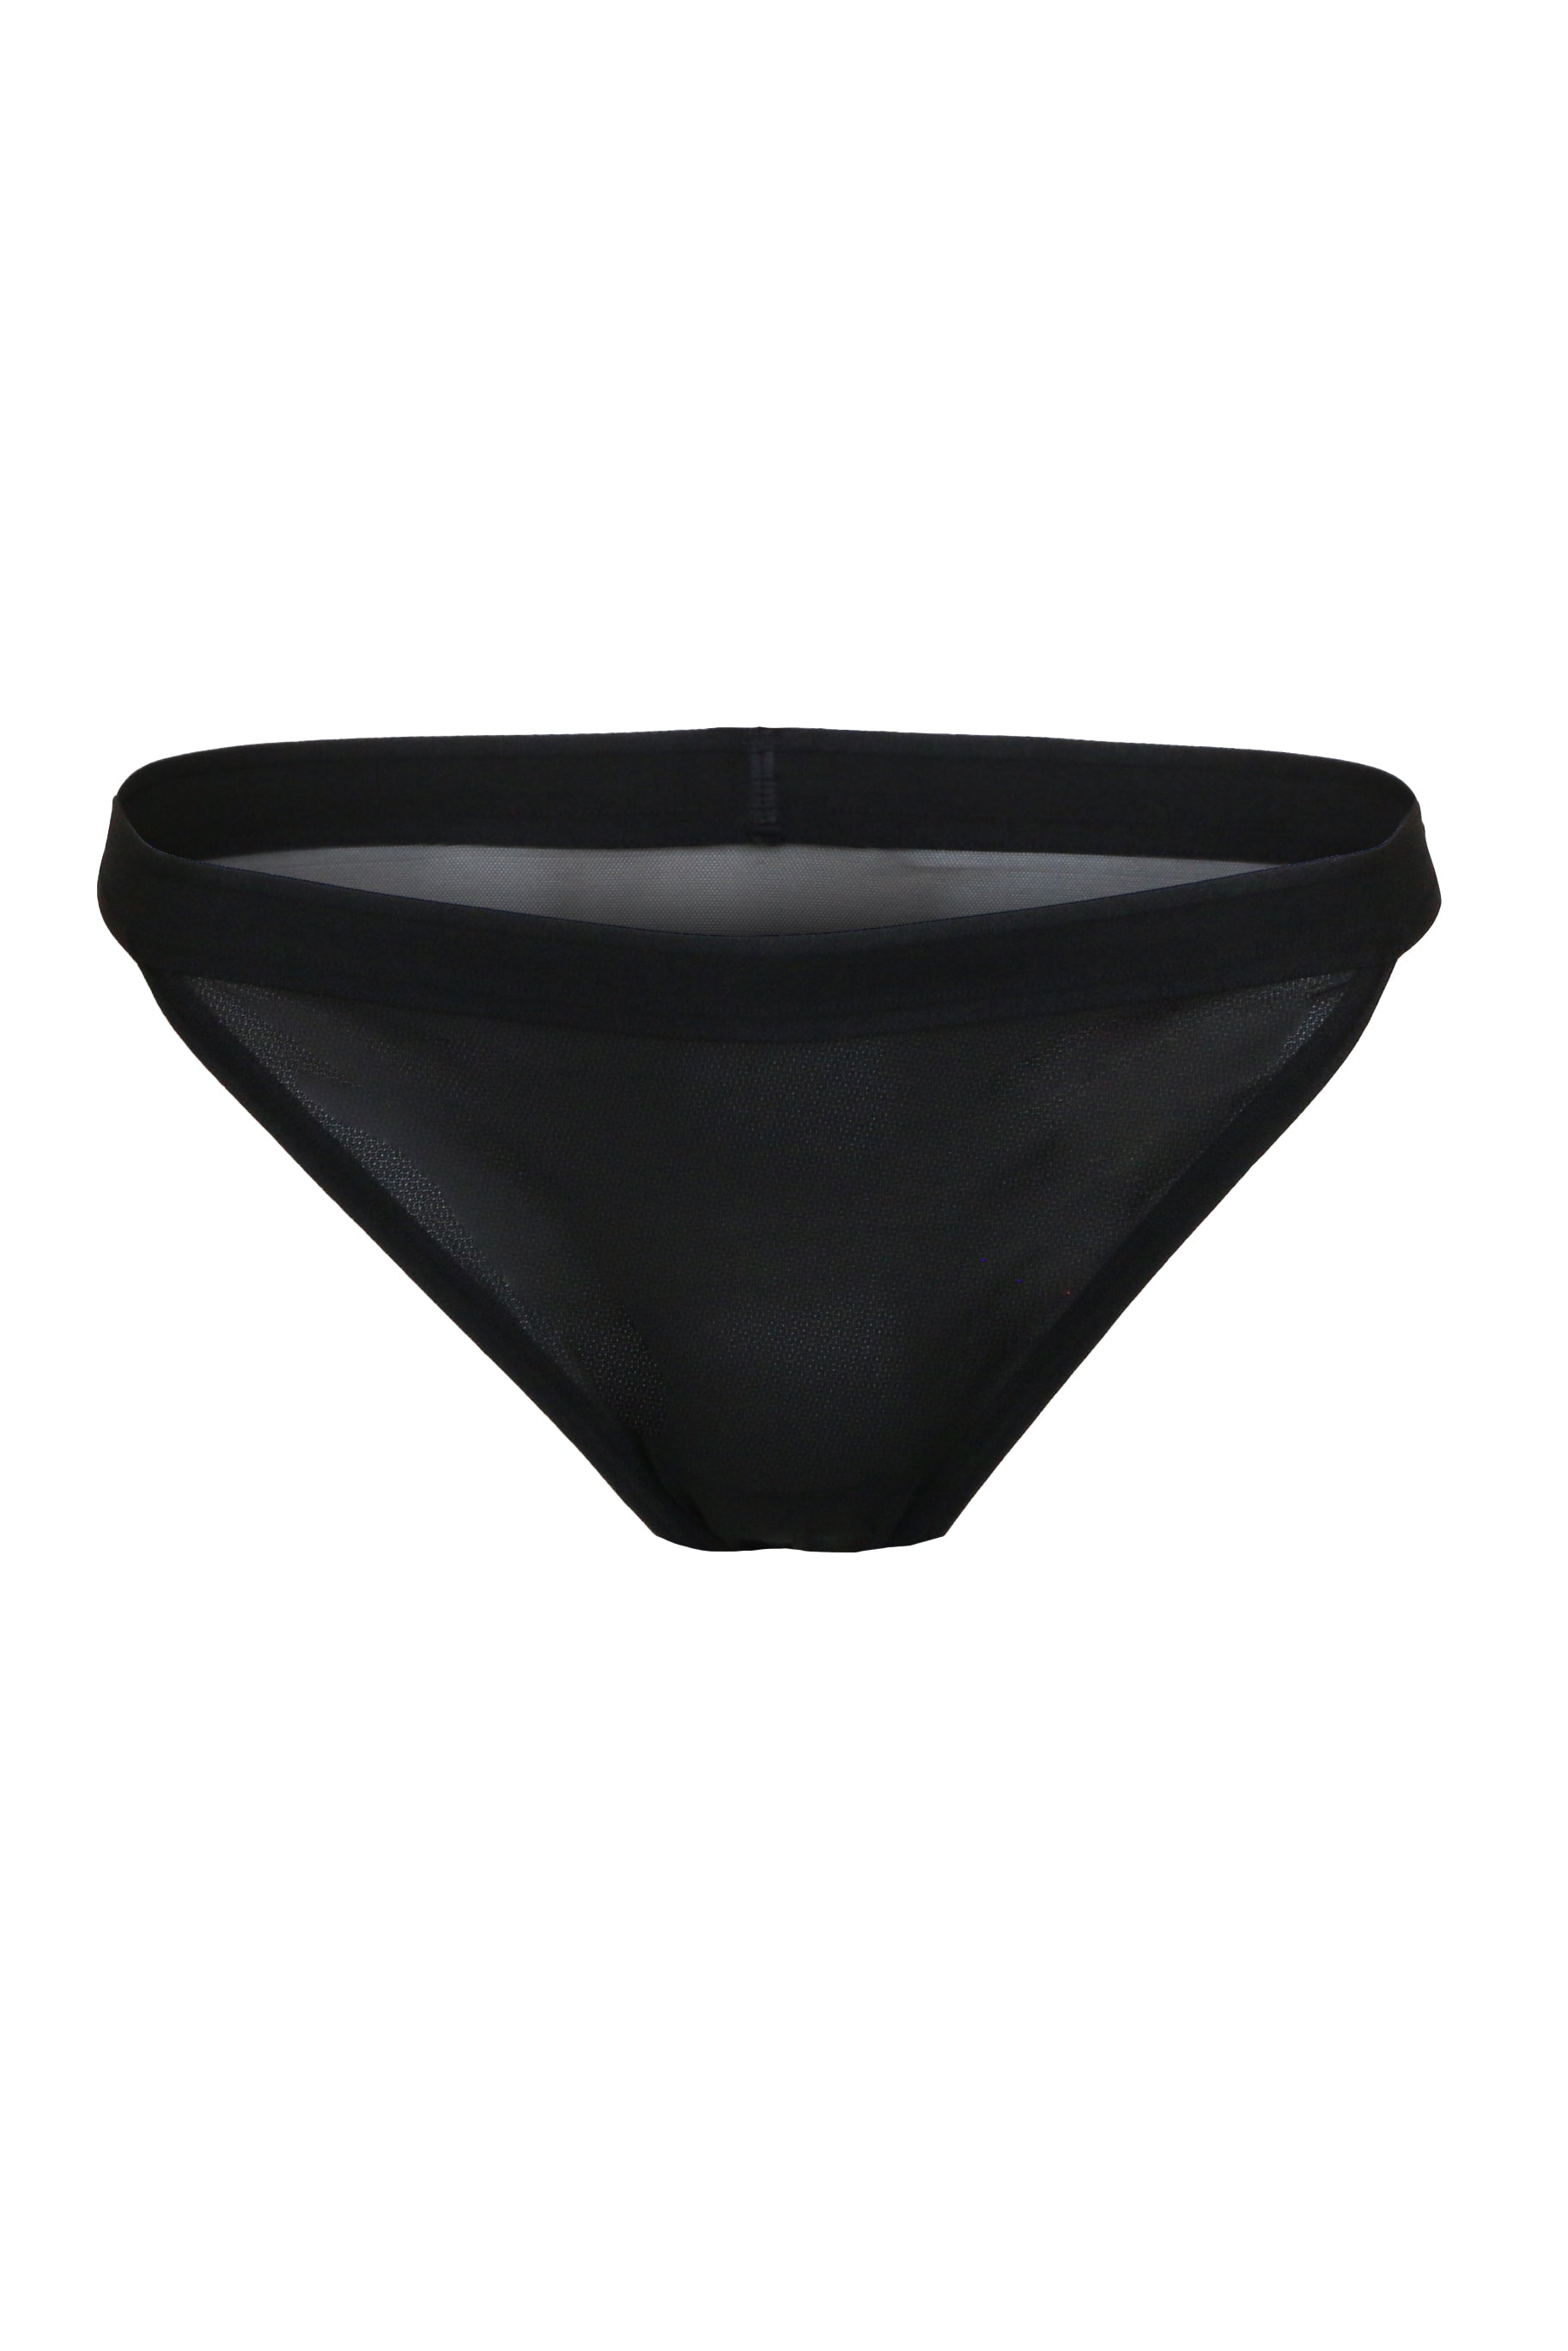 Black Lace Knickers See Through Erotic Panties Sheer Panties Boudoir  Lingerie Plus Size Naughty Knickers Wife Gift Honeymoon Lingerie 